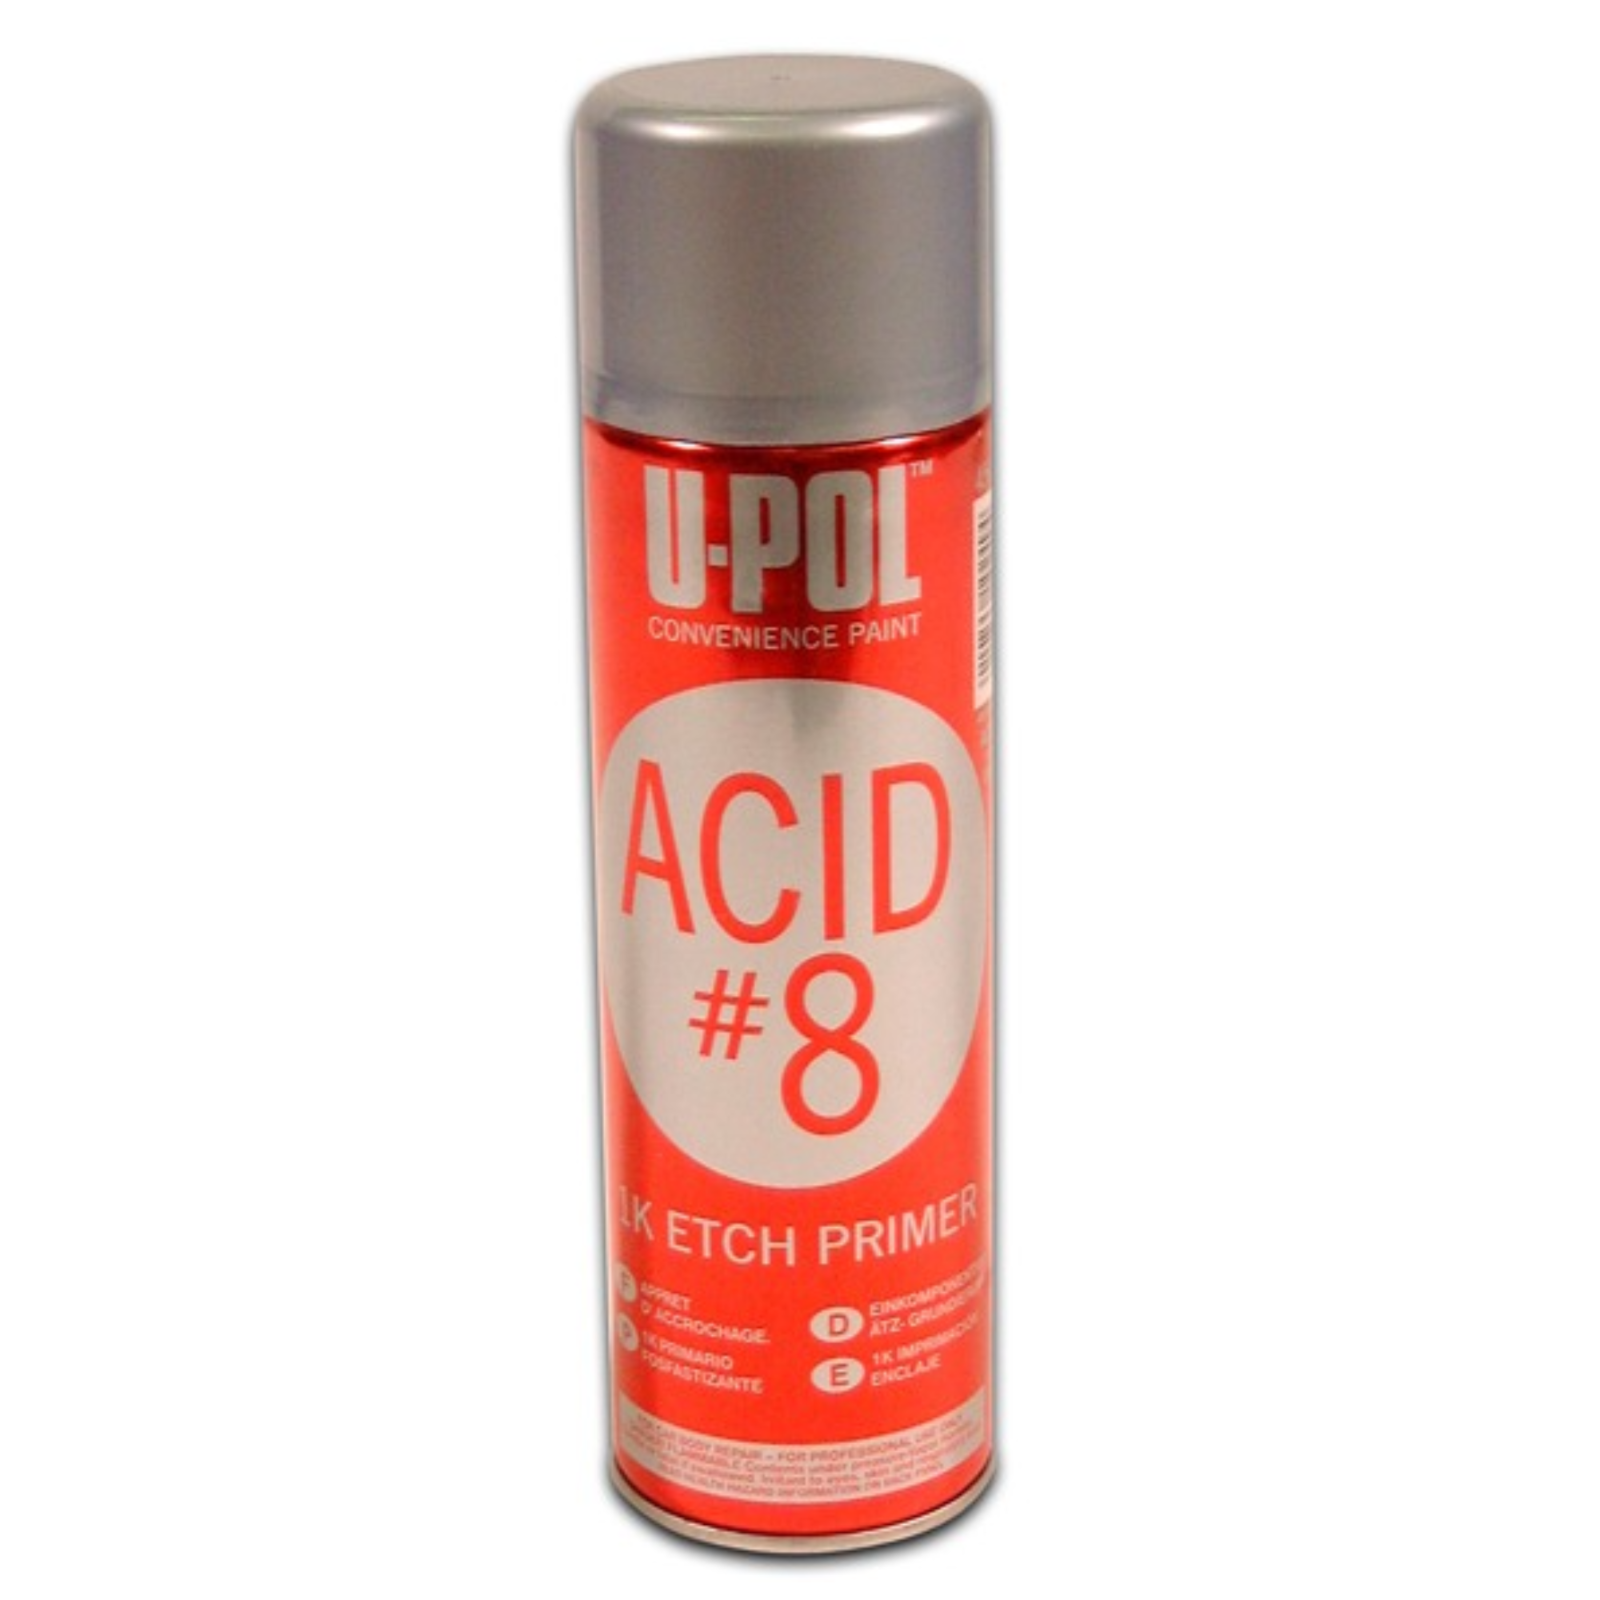 Upol Acid #8 Etch Primer - 450ml